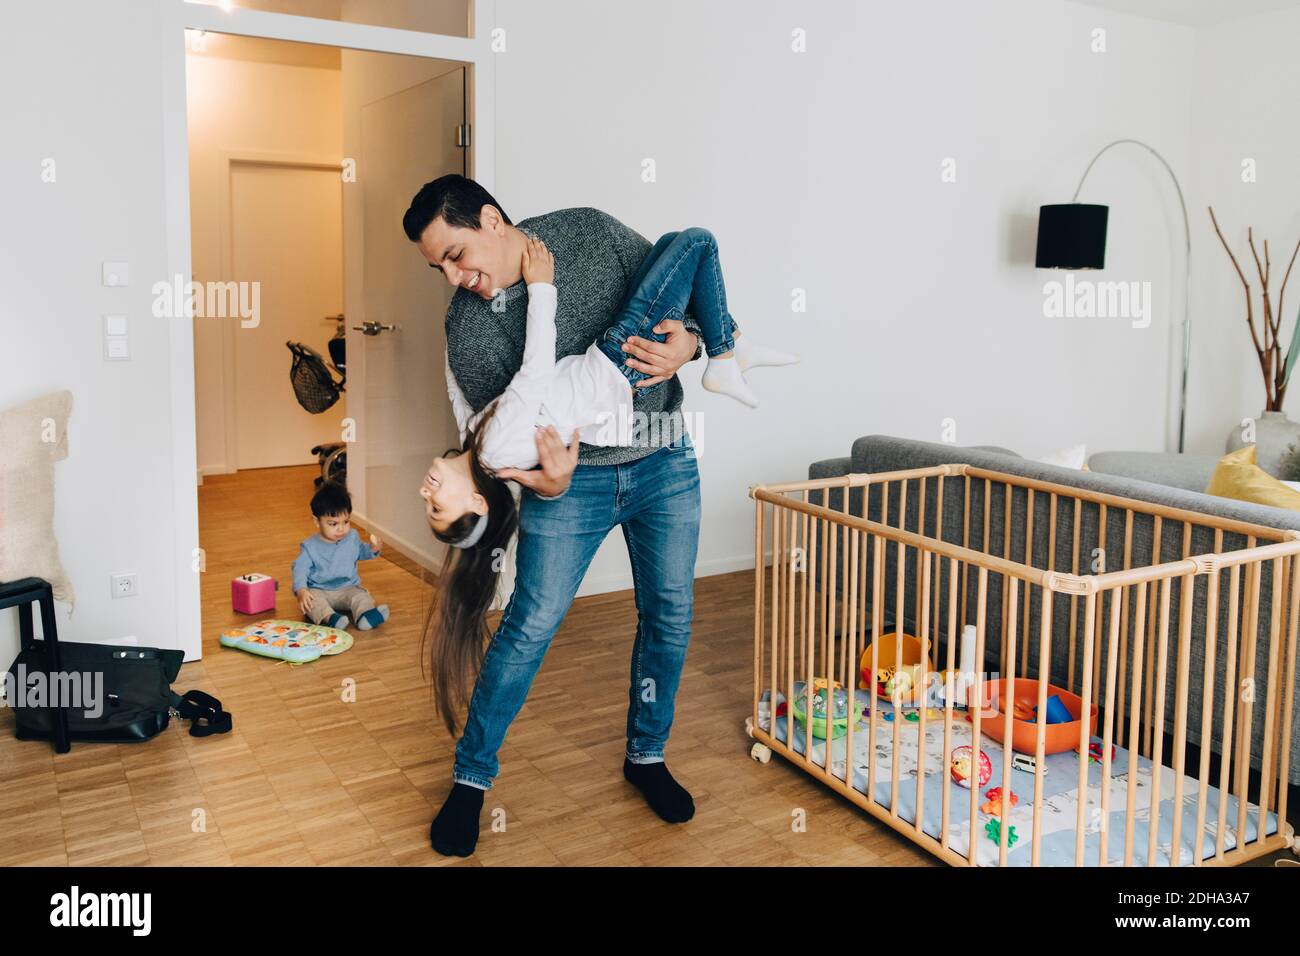 Pleine longueur de père joueur soulevant sa fille pendant son fils jouer avec des jouets dans la salle de séjour Banque D'Images